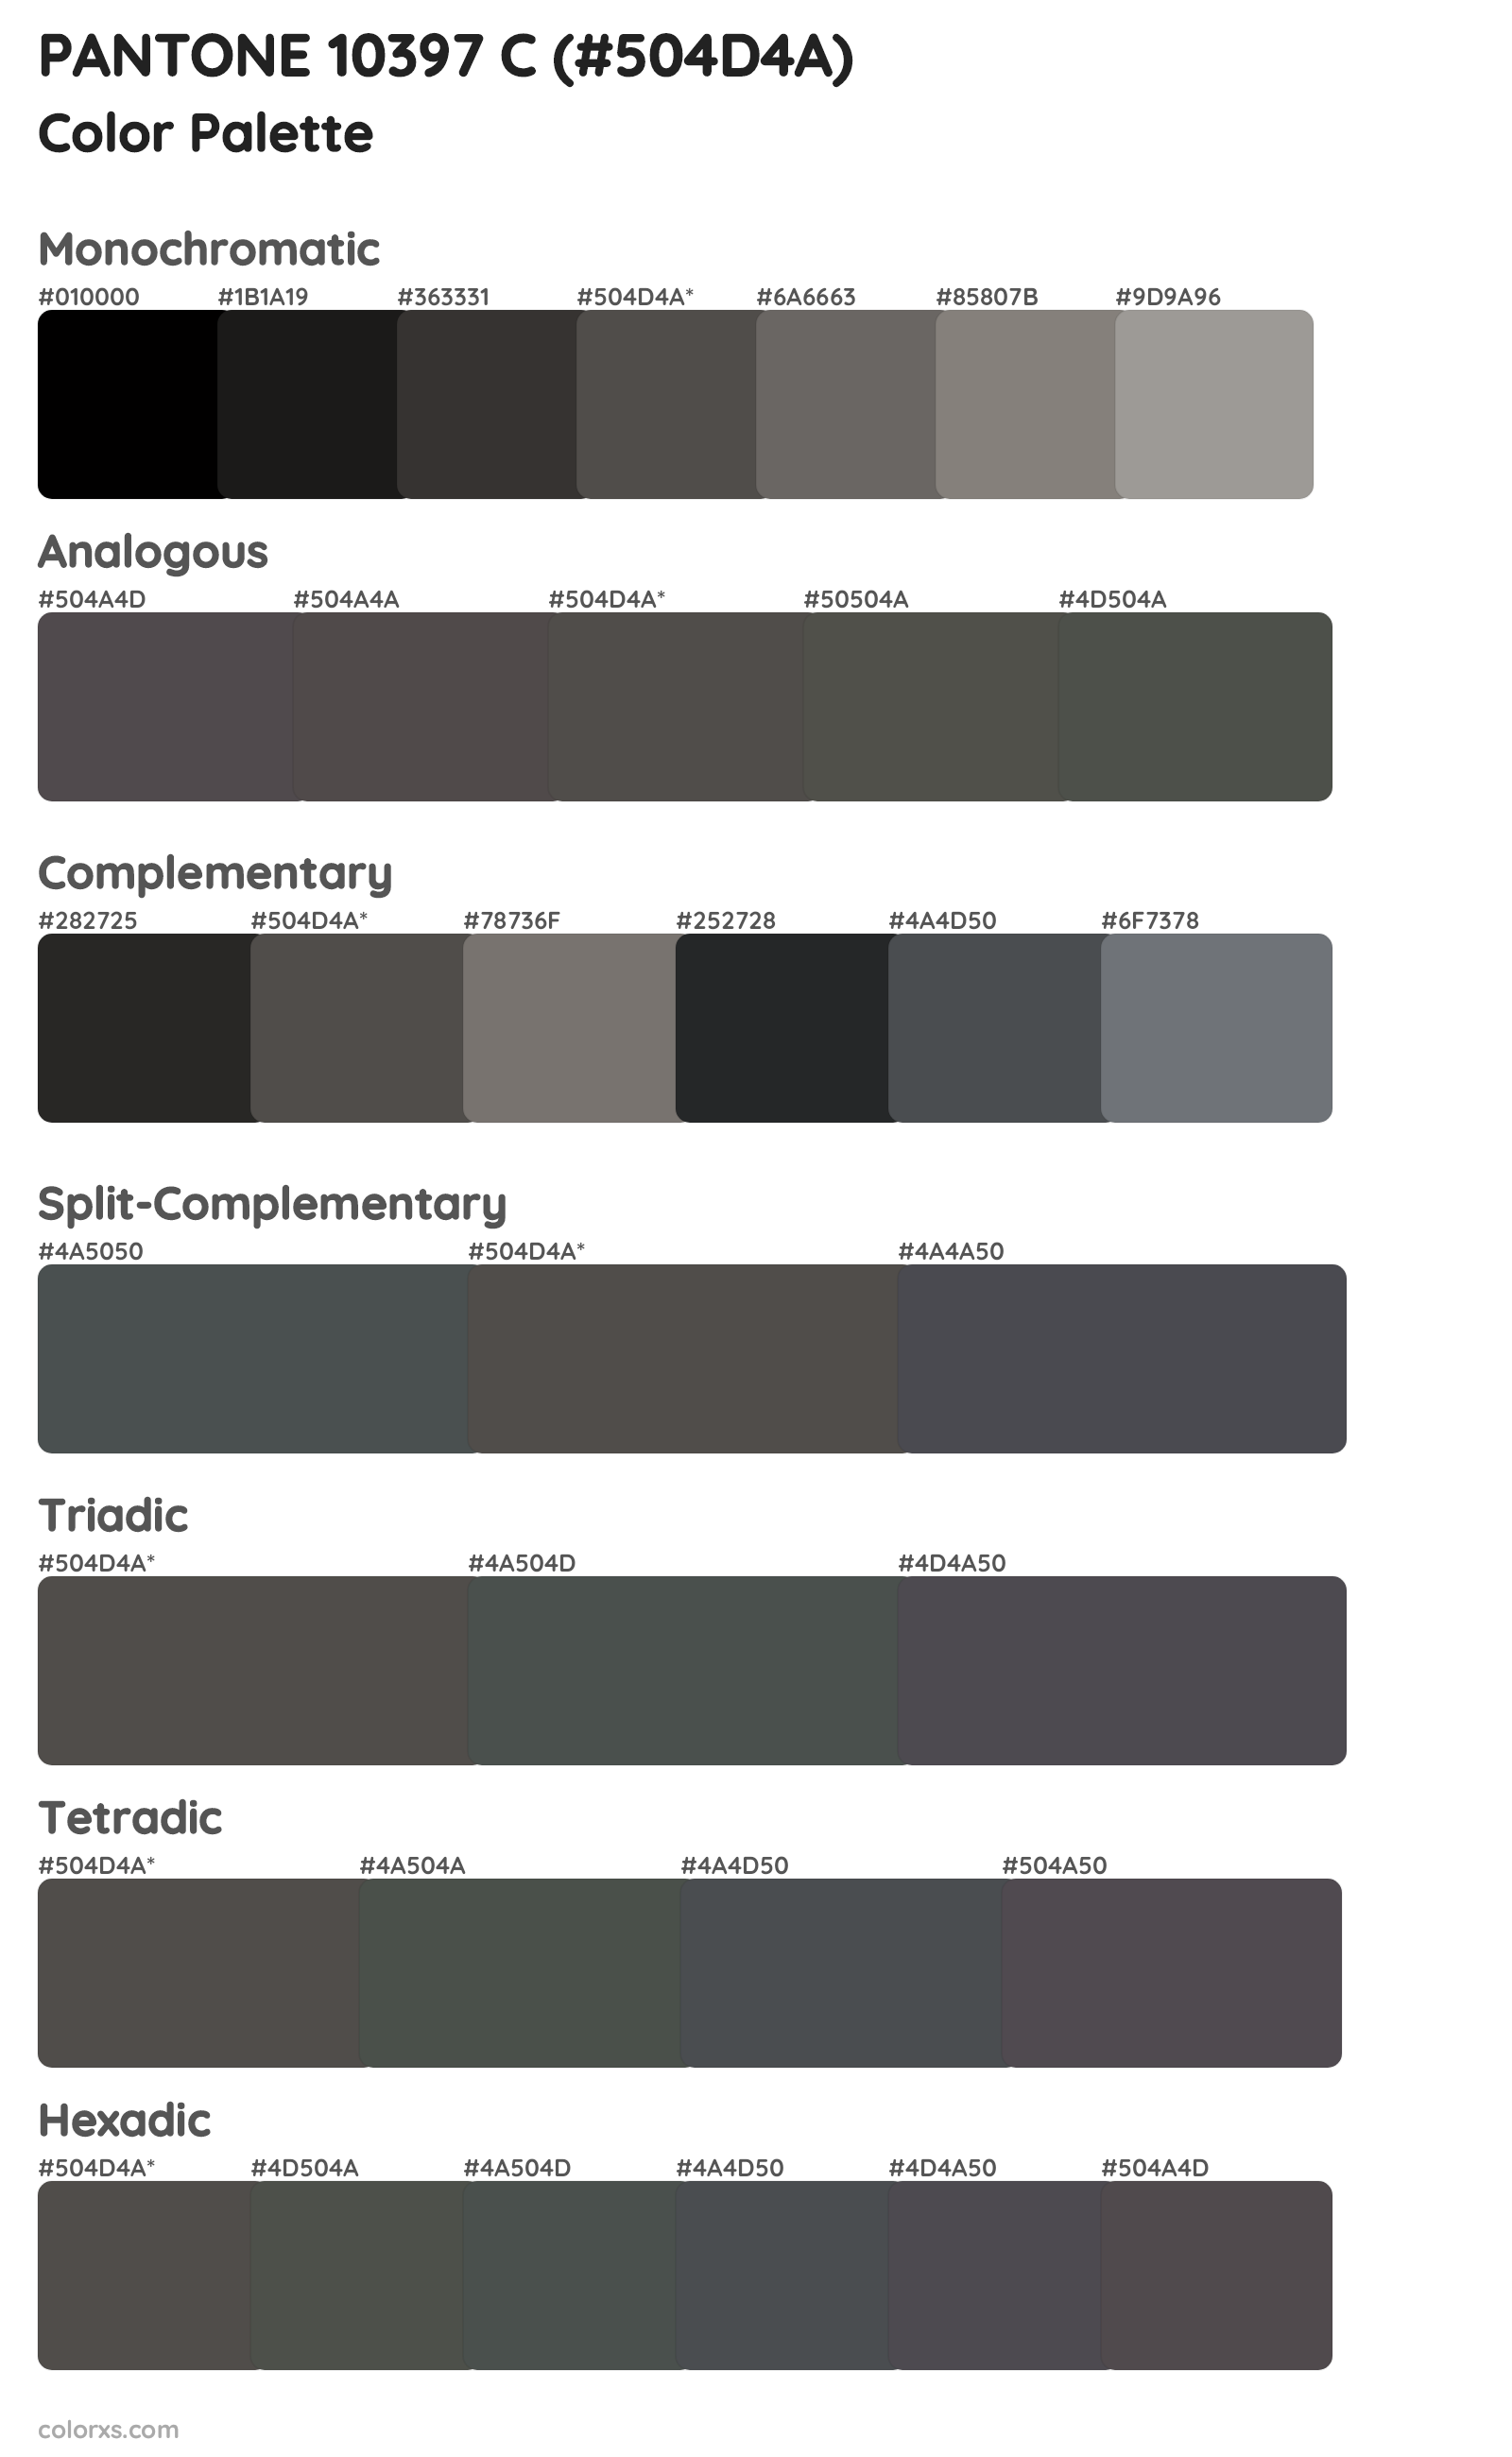 PANTONE 10397 C Color Scheme Palettes